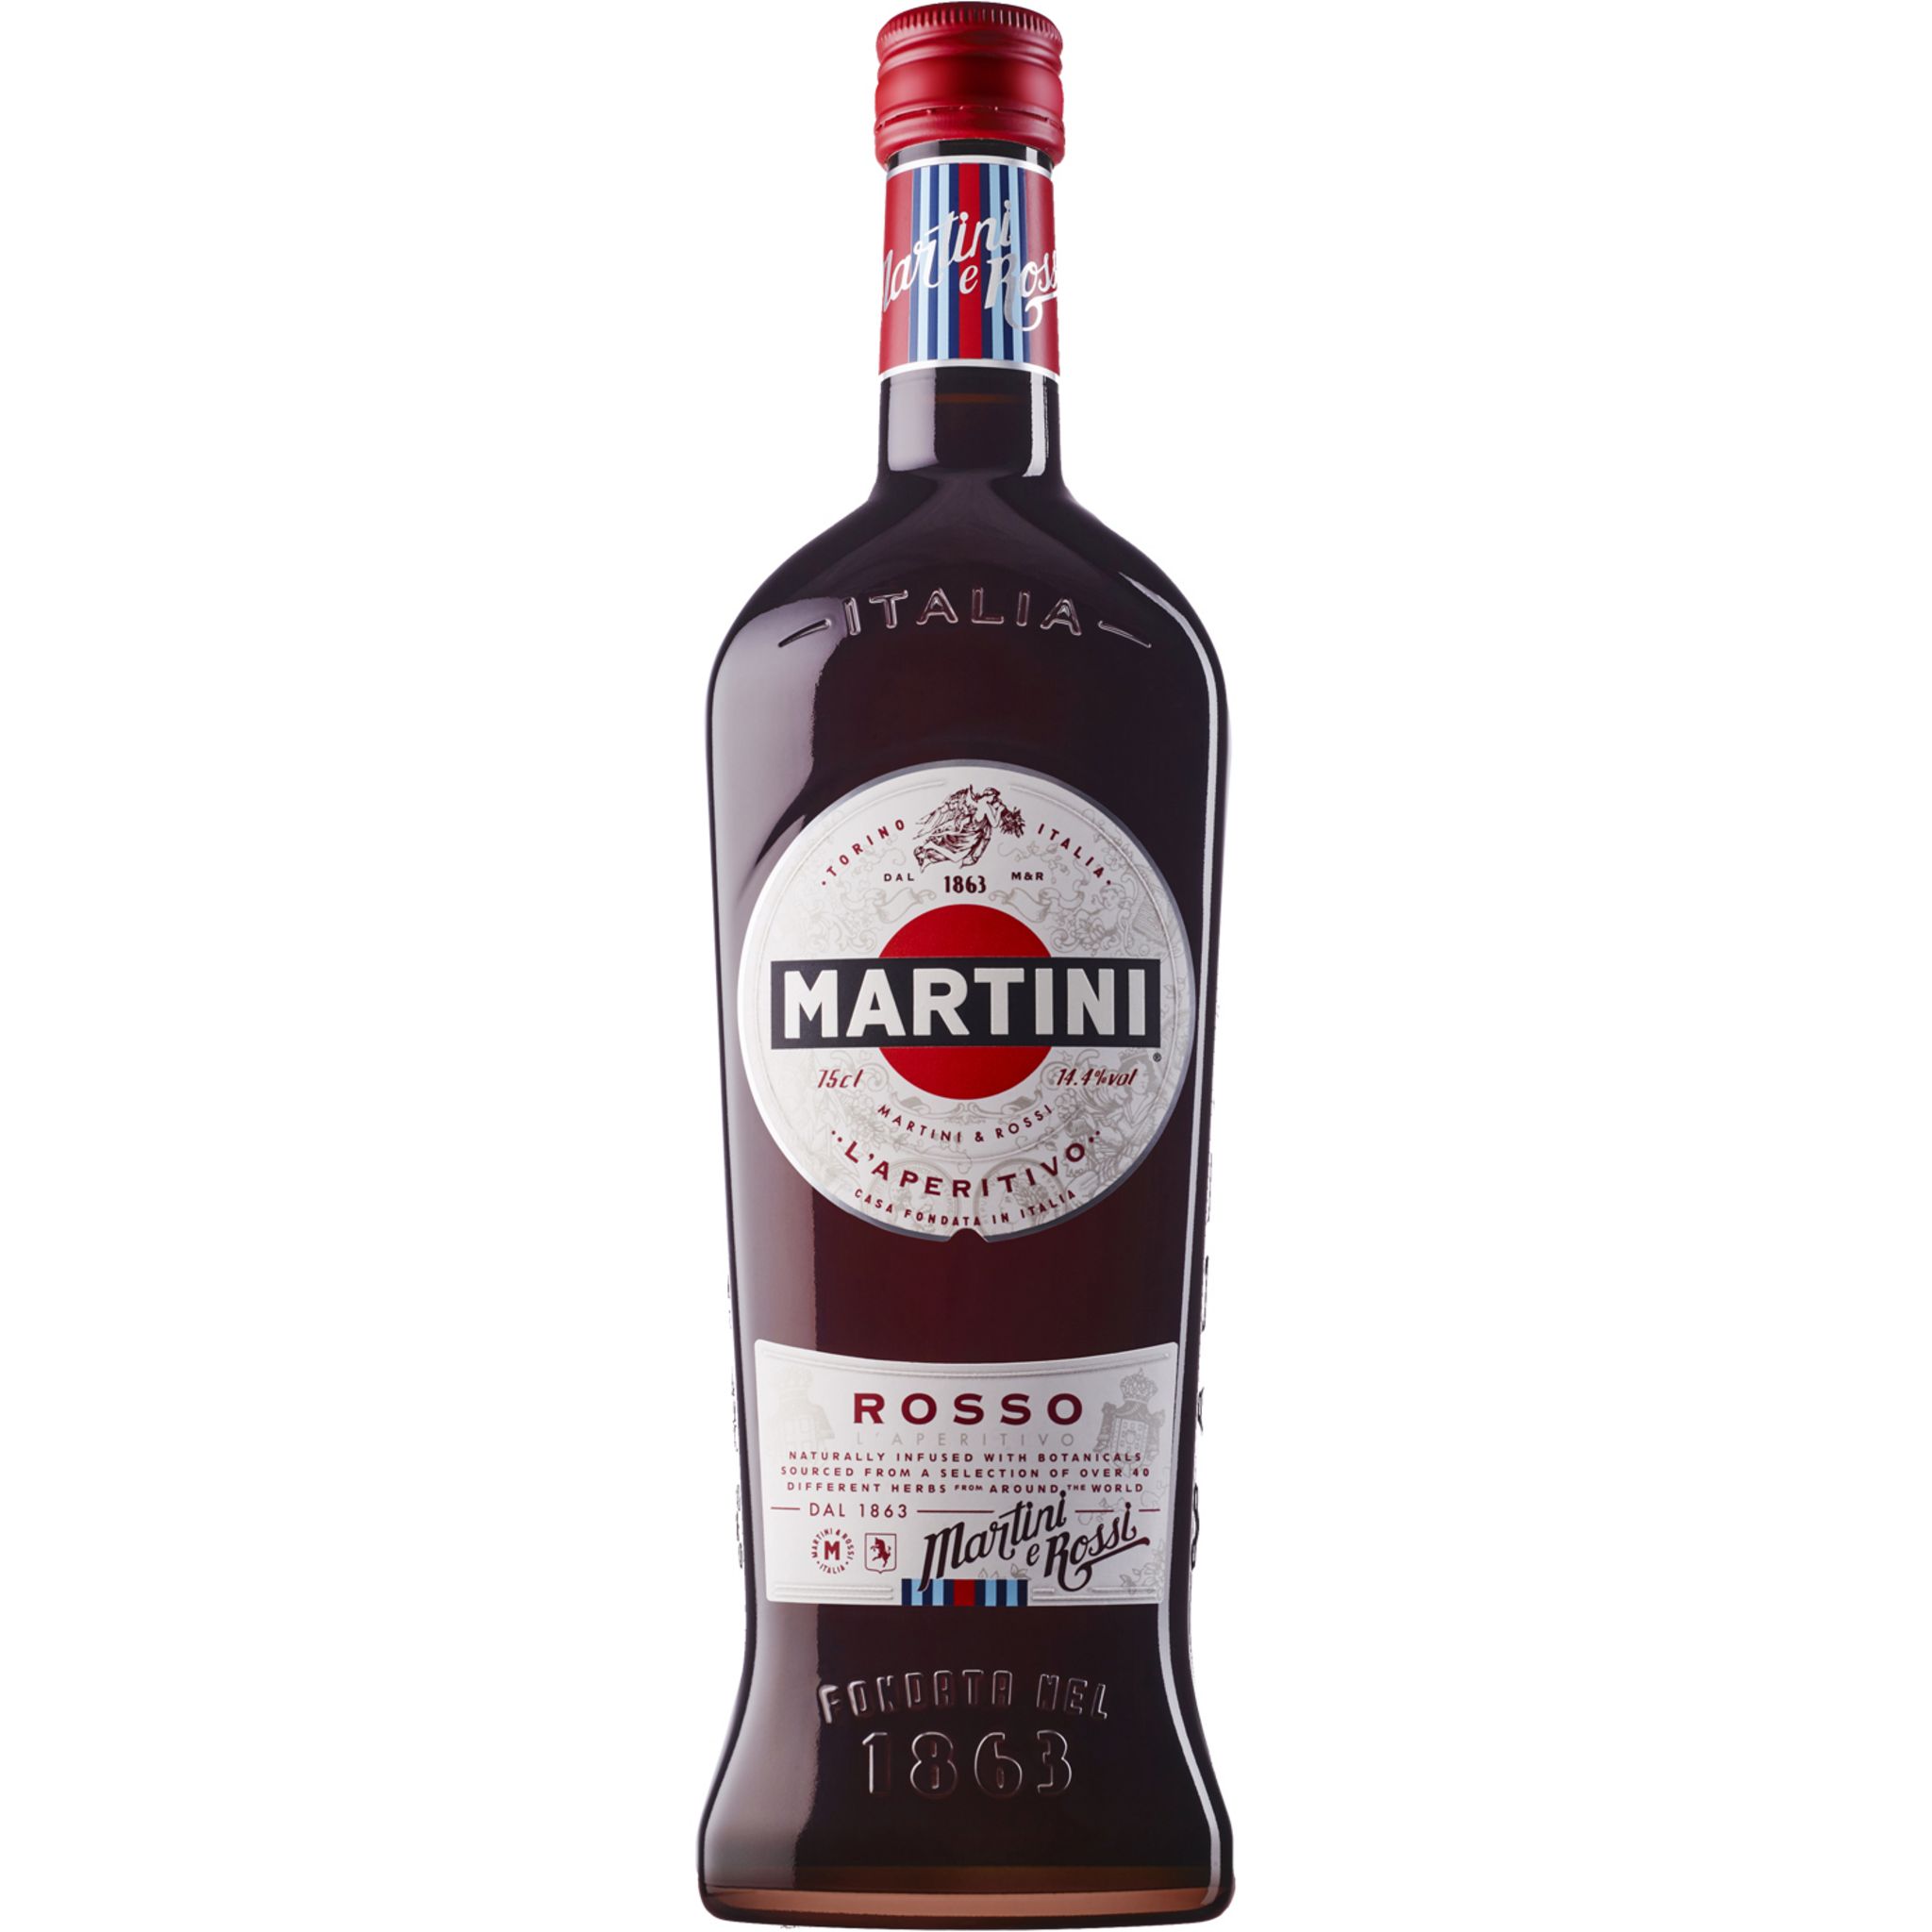 Martini blanc 14.4% 100cl - Maison des vins